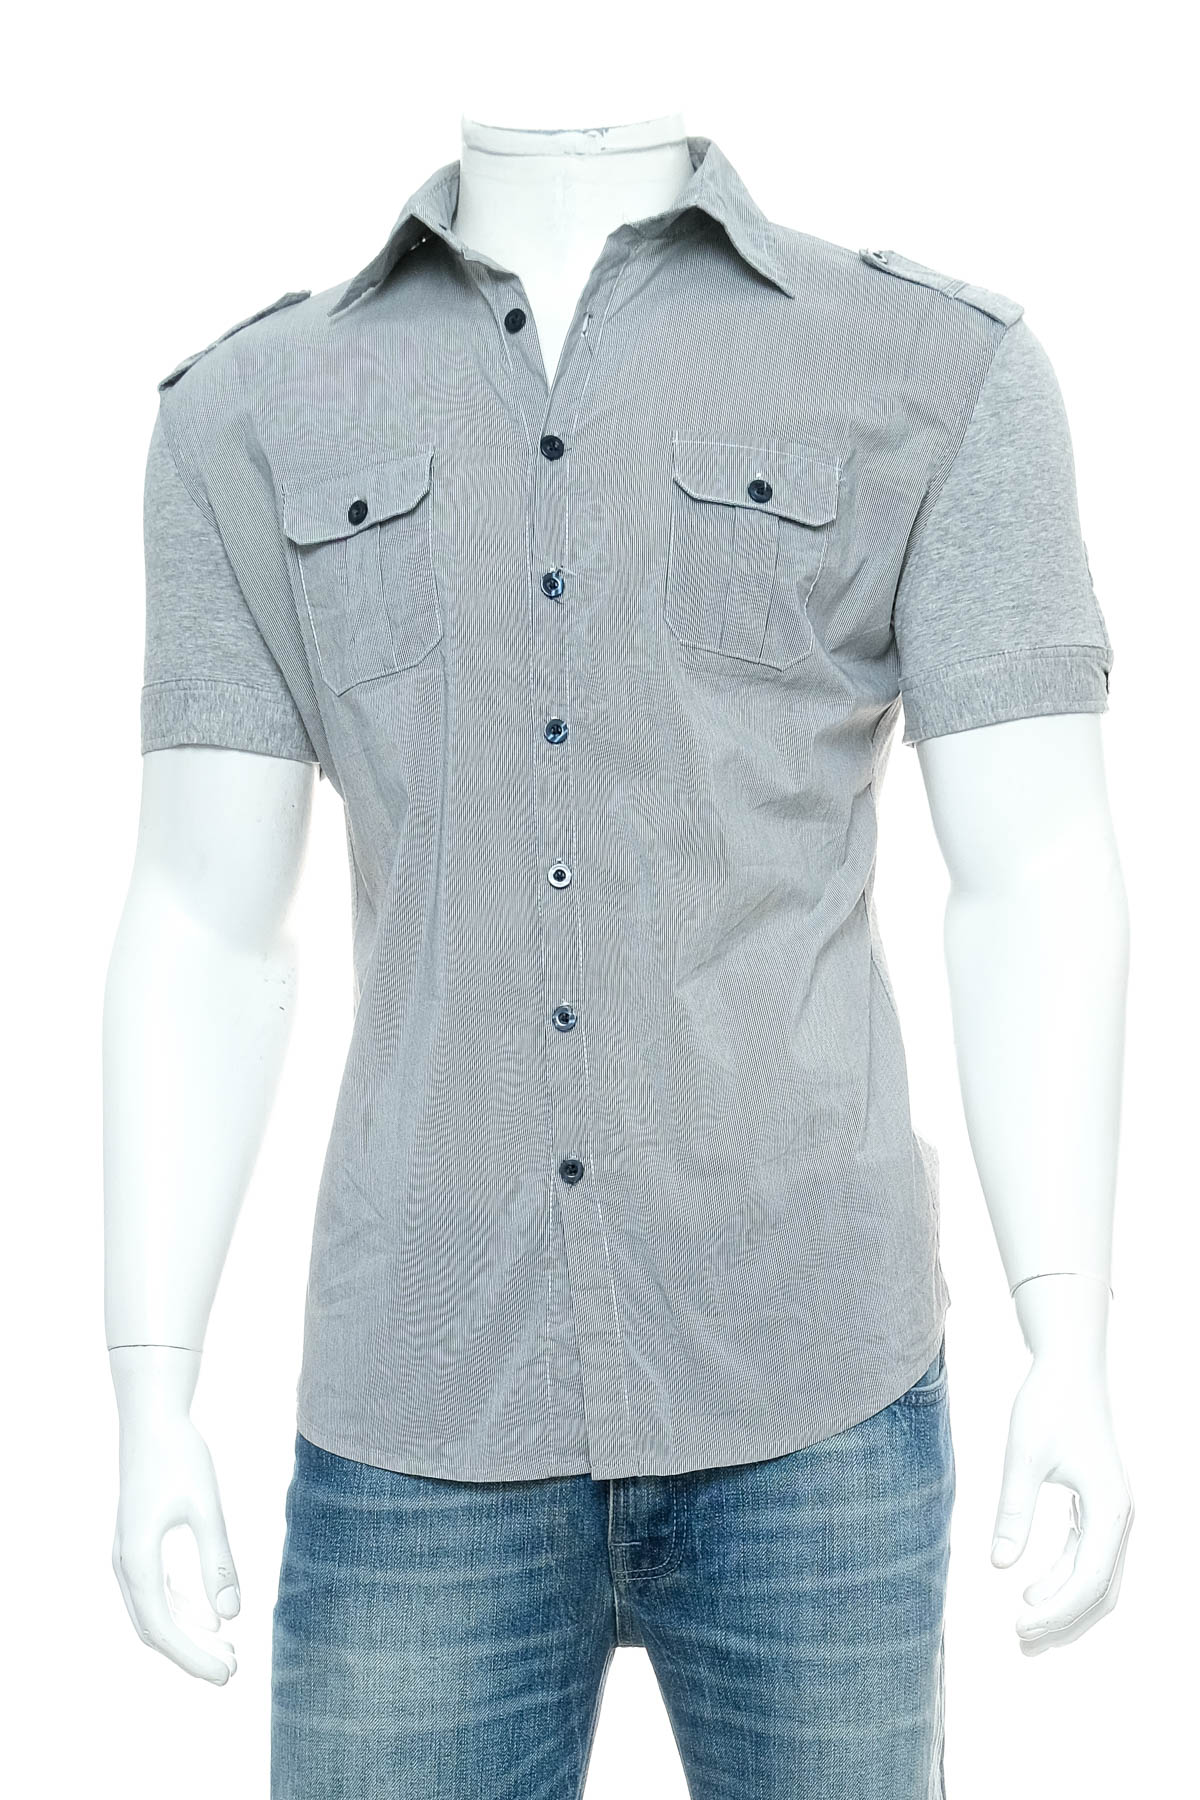 Ανδρικό πουκάμισο - Newoboy - 0